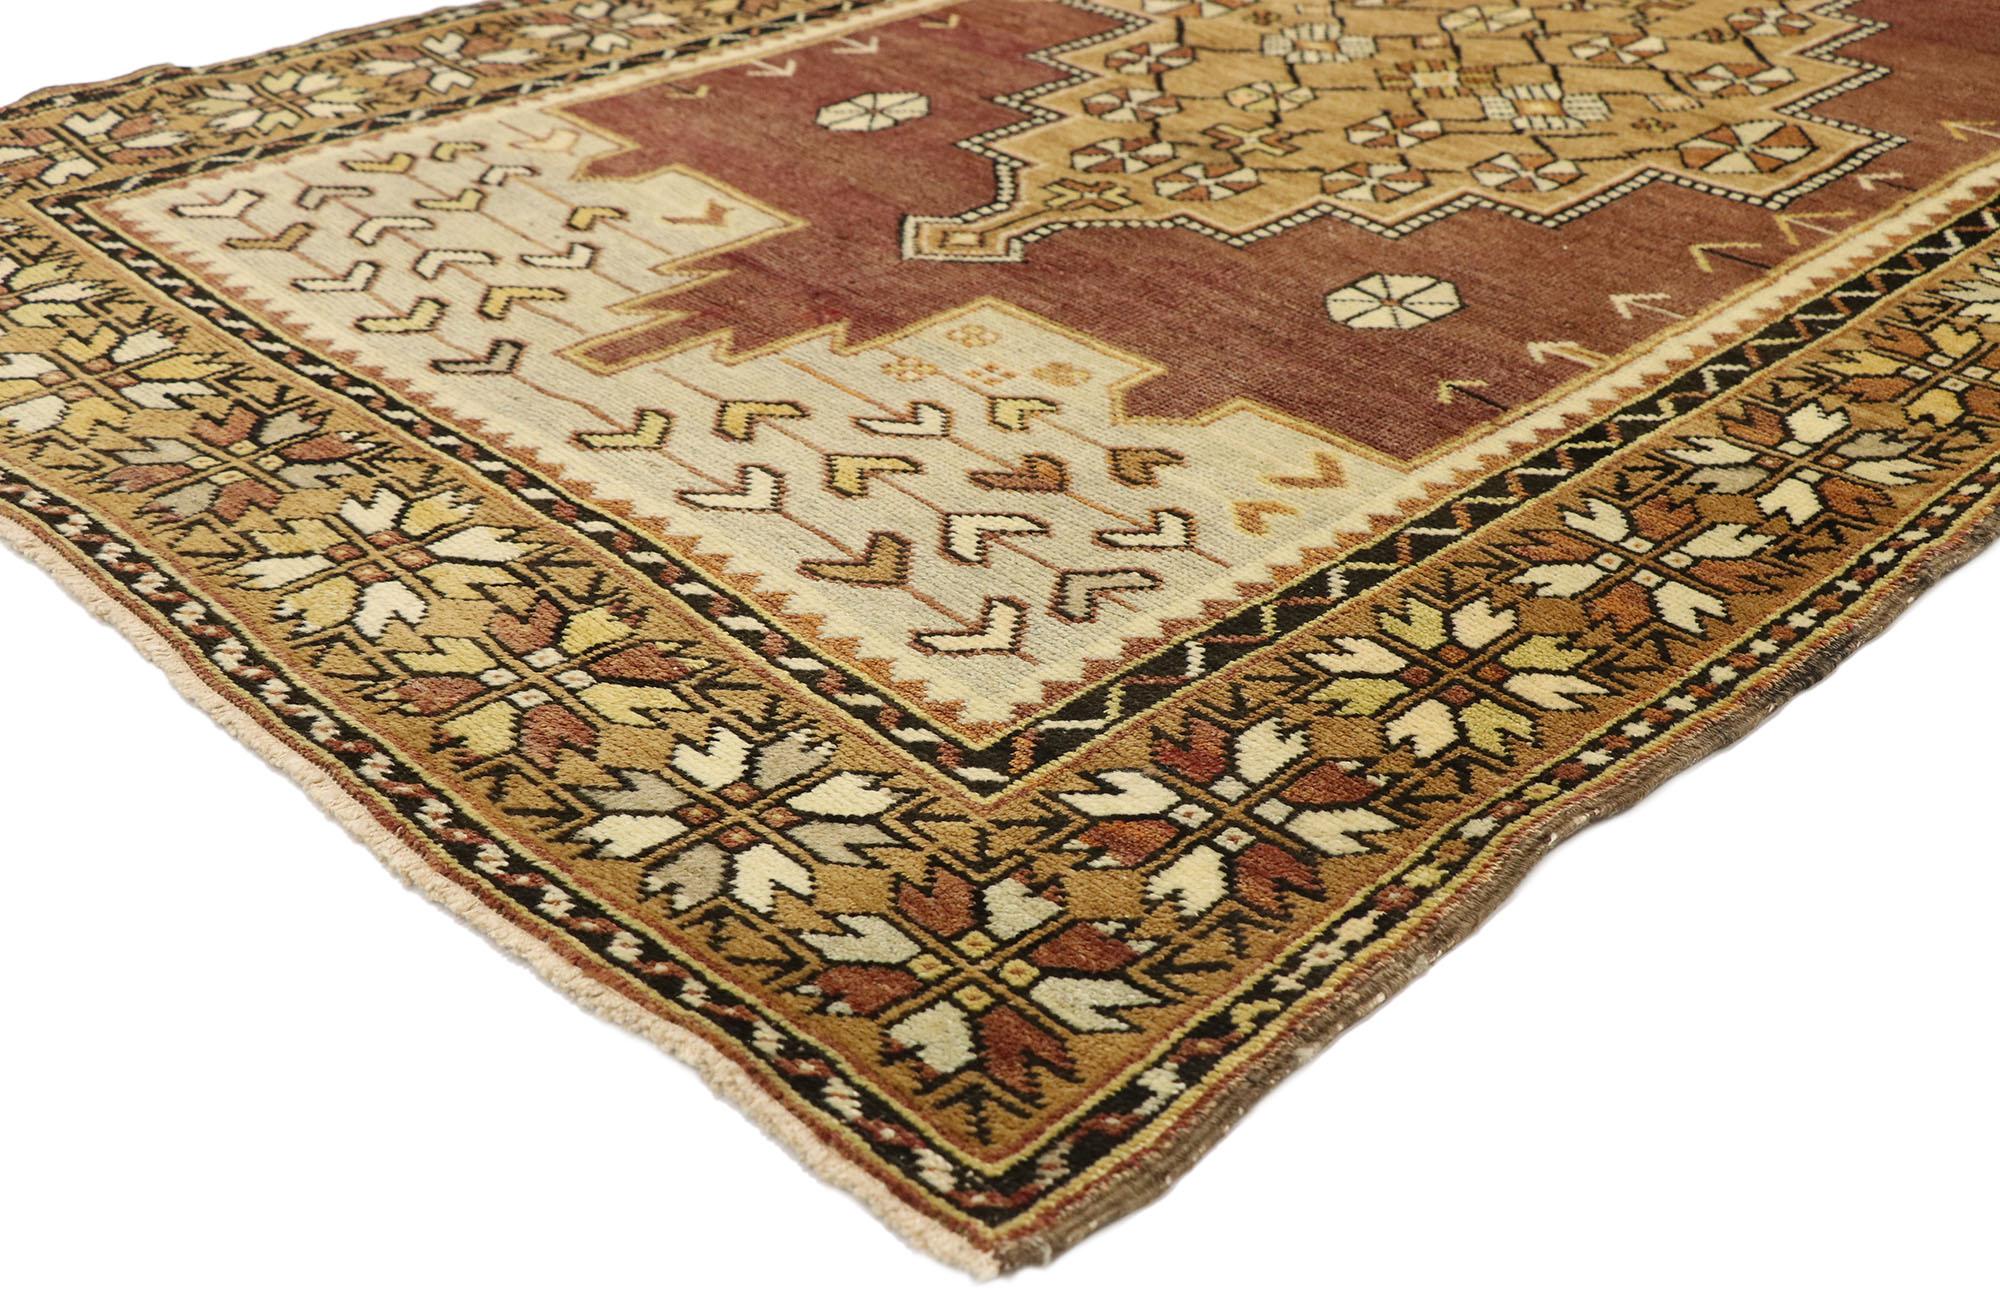 50176 Türkischer Oushak-Teppich im rustikalen, modernen Handwerksstil. Dieser handgeknüpfte türkische Oushak-Teppich aus Wolle ist warm und einladend. Er zeigt ein gestuftes Zentralmedaillon, das innen mit einem Rondell-Rosetten-Pinwheel-Gitter